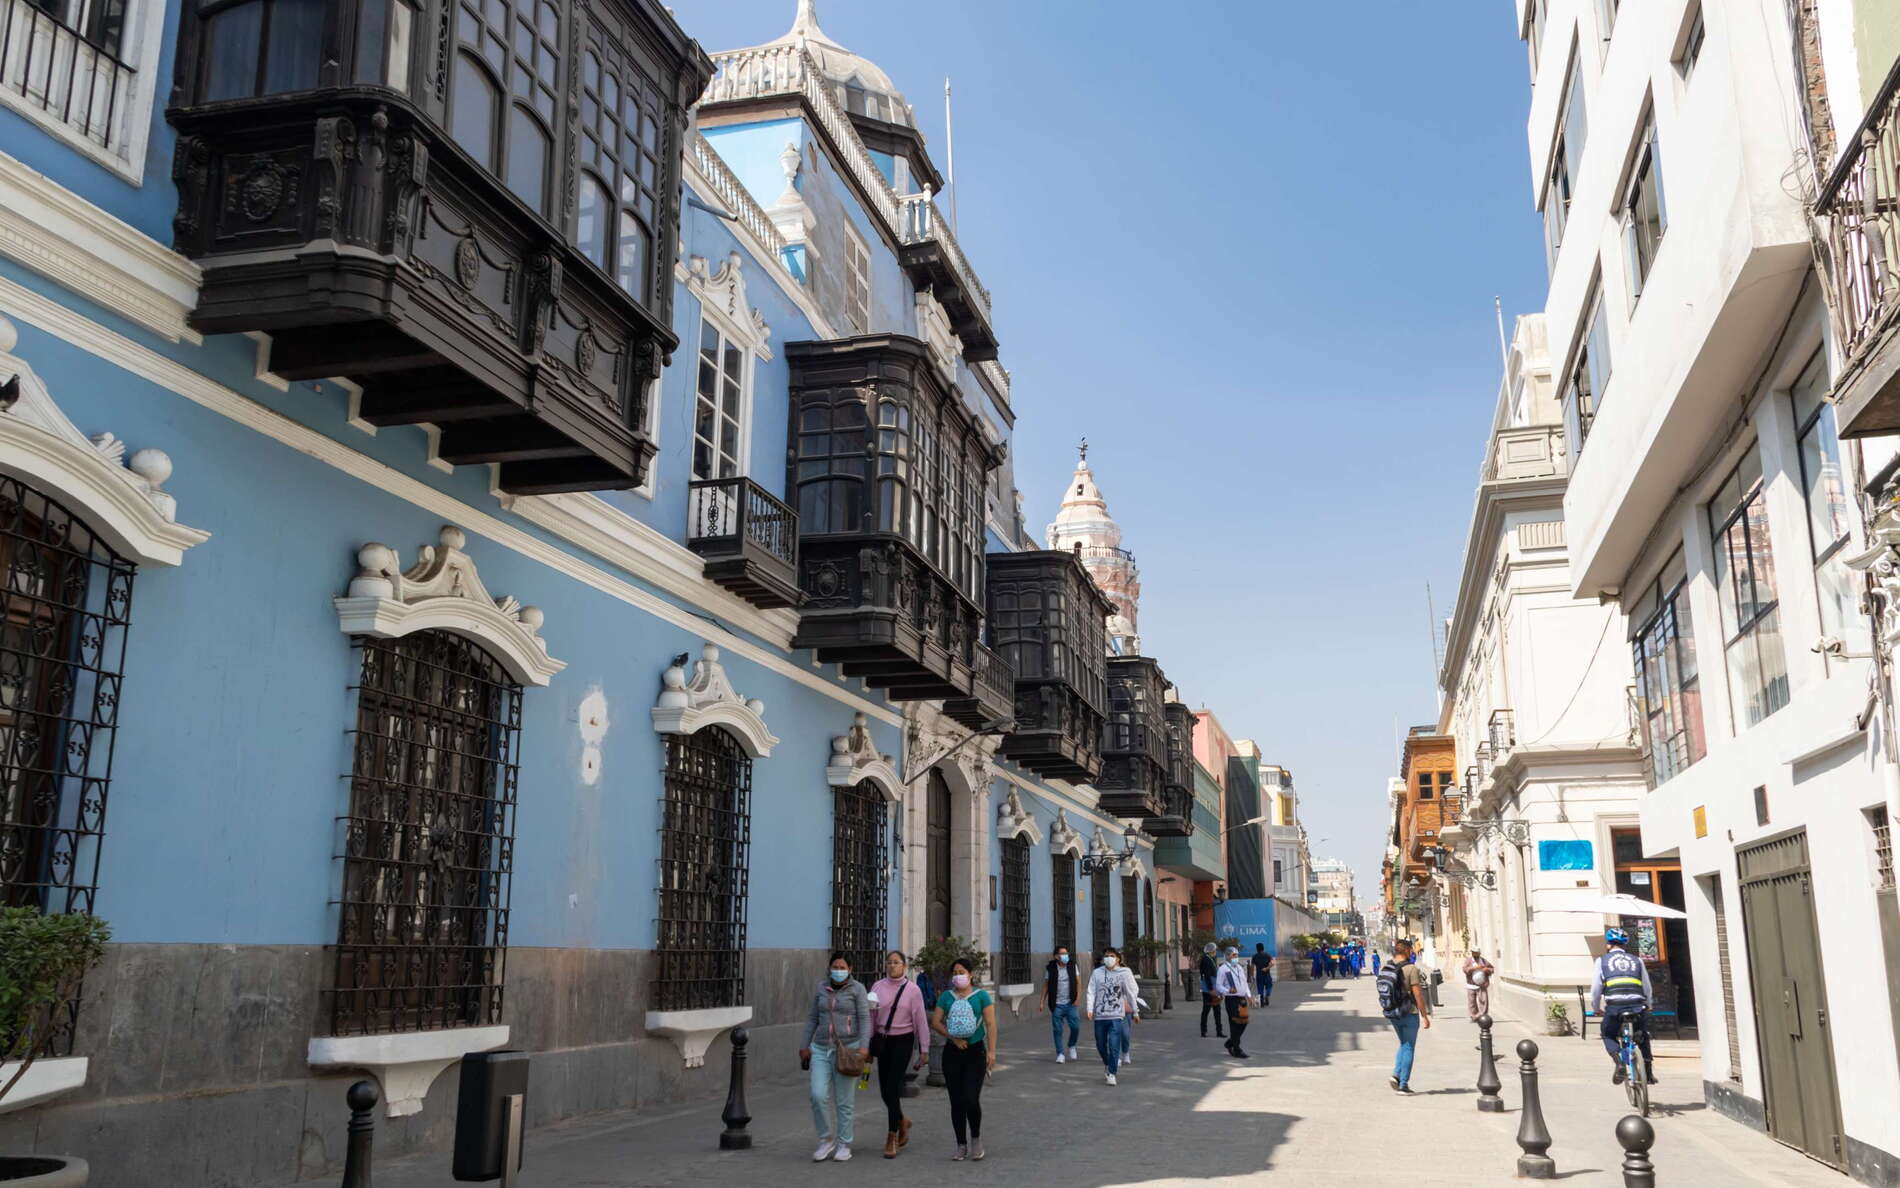 Lima | Jirón Conde de Superunda with oriels